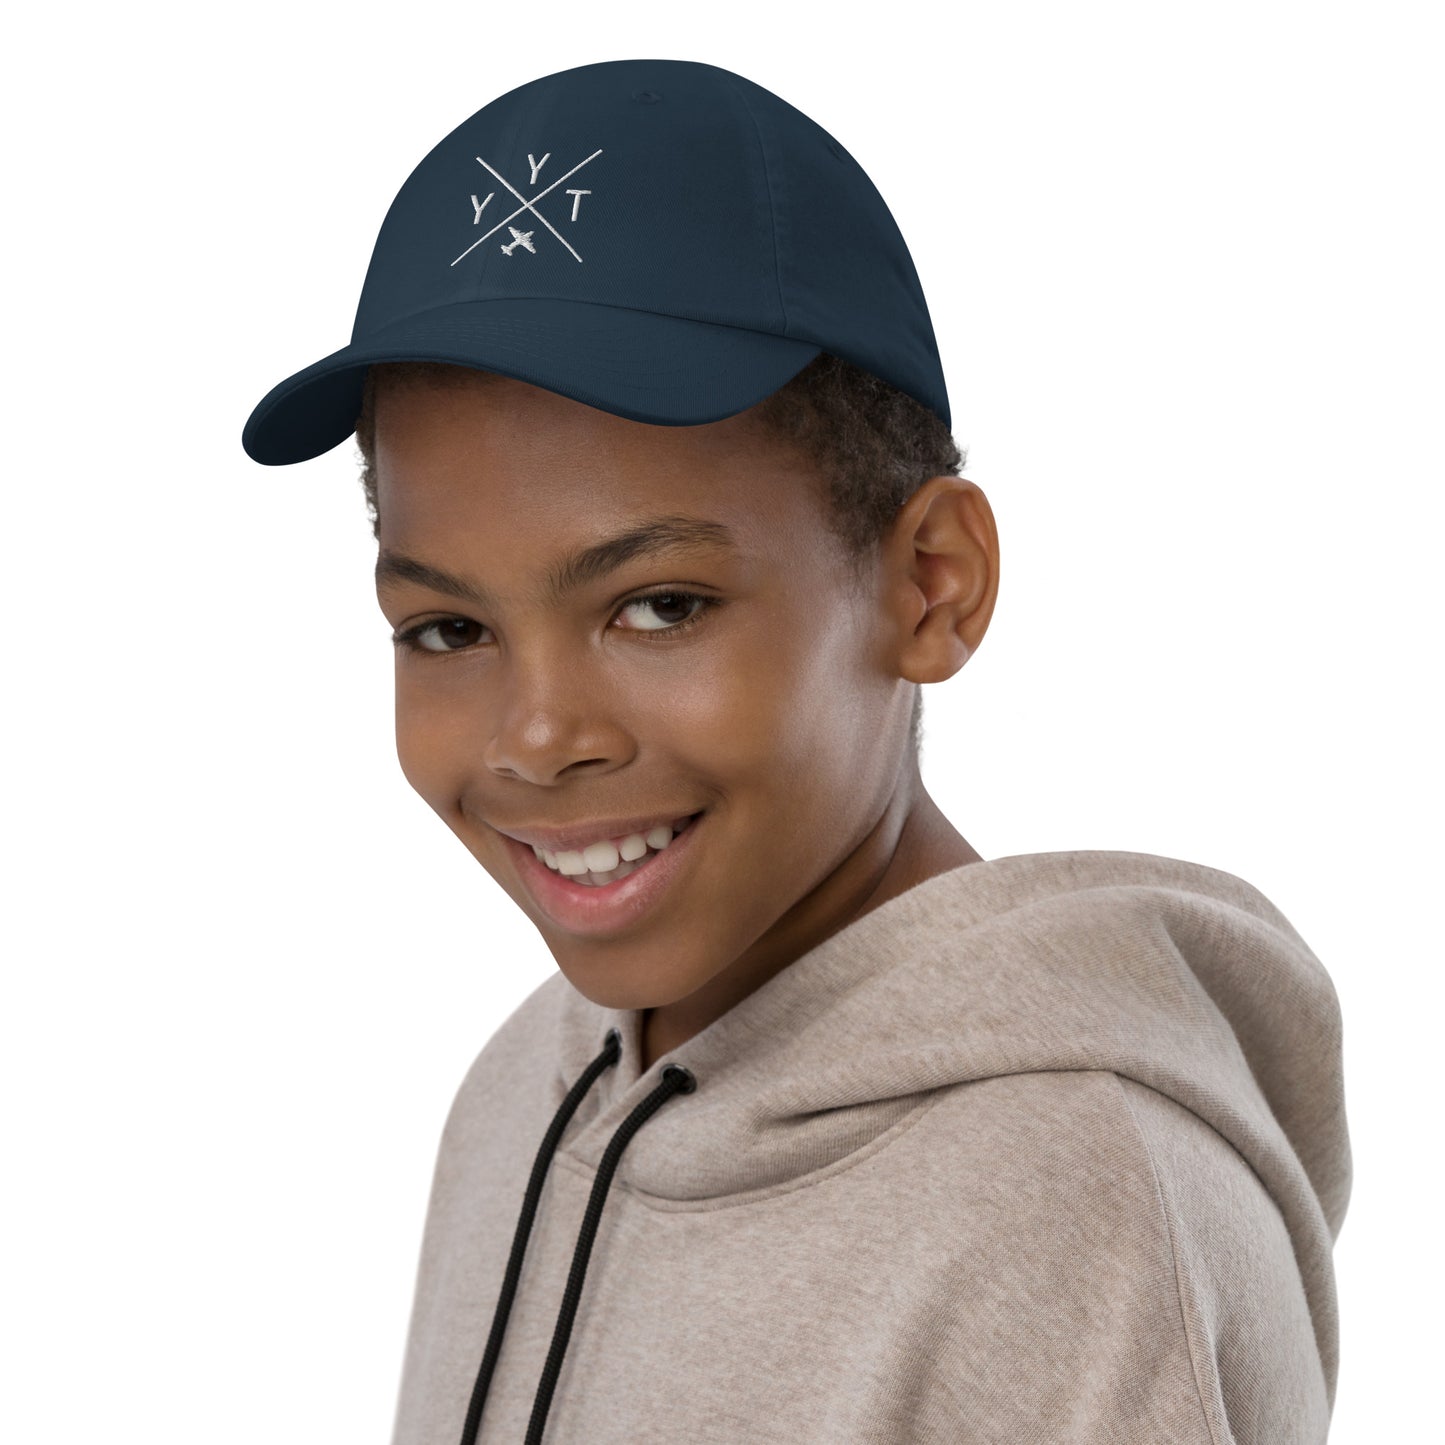 Crossed-X Kid's Baseball Cap - White • YYT St. John's • YHM Designs - Image 03